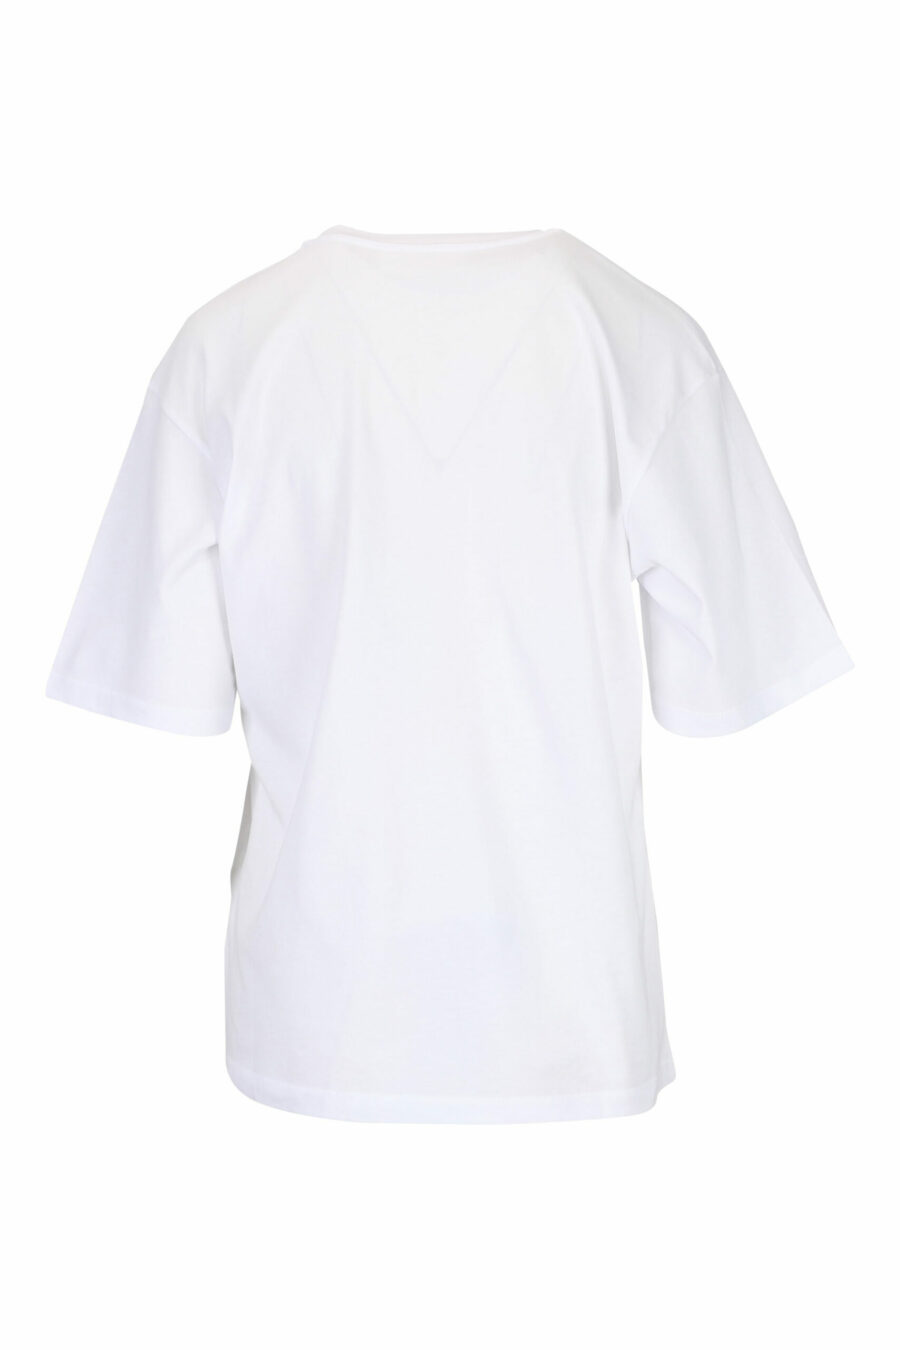 Weißes T-Shirt mit Herzaufdruck - 29710541060133 1 skaliert